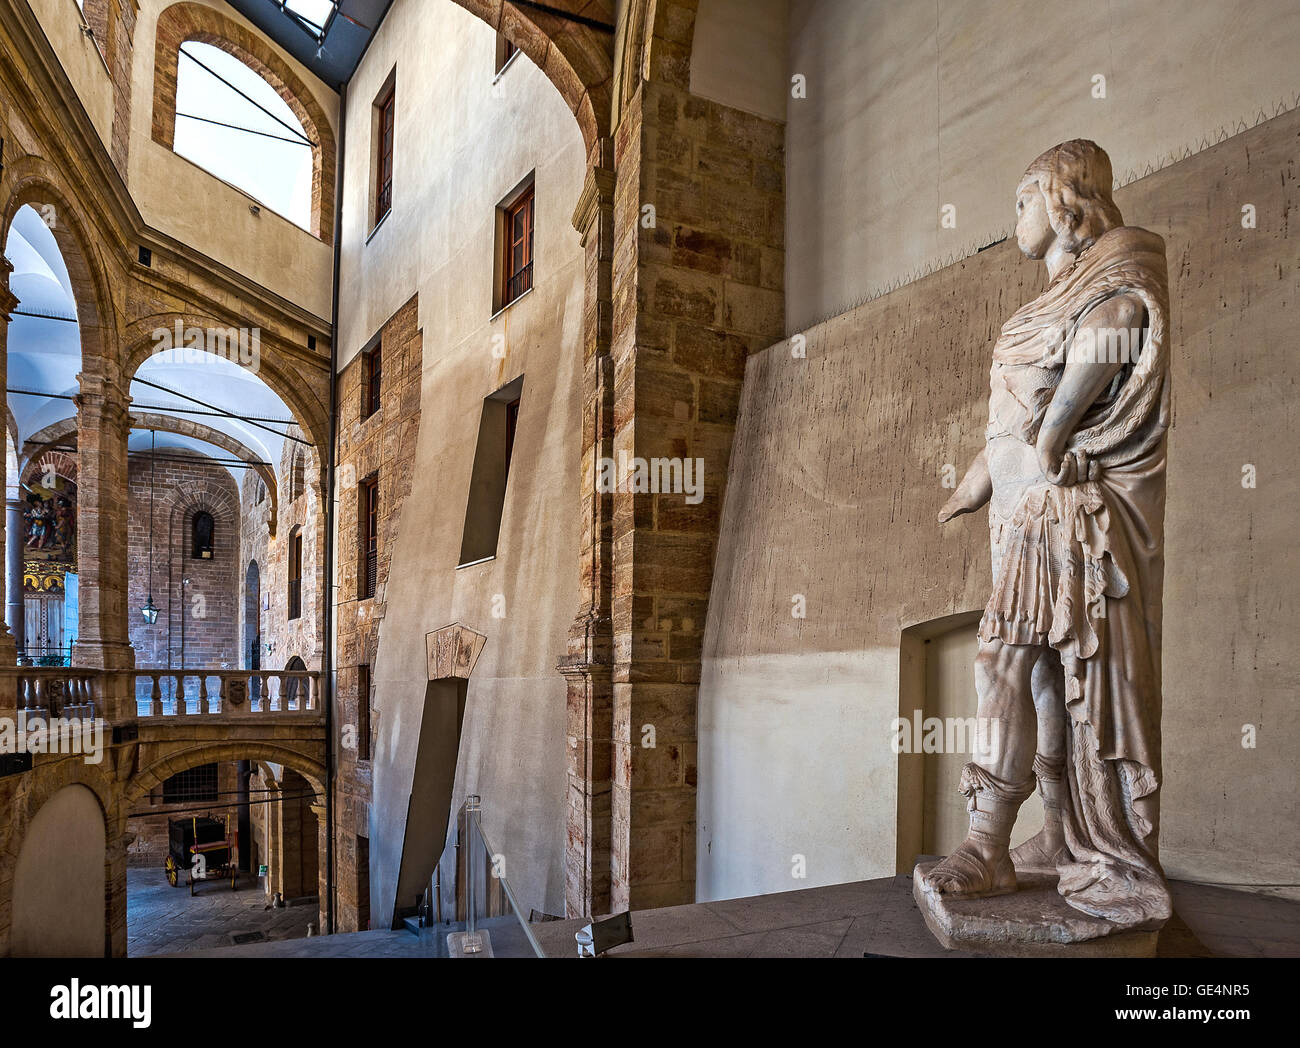 Italia Sicilia Palermo Royal Palace - Palazzo dei Normanni - colonnato del  cortile - Federico II statua Foto stock - Alamy